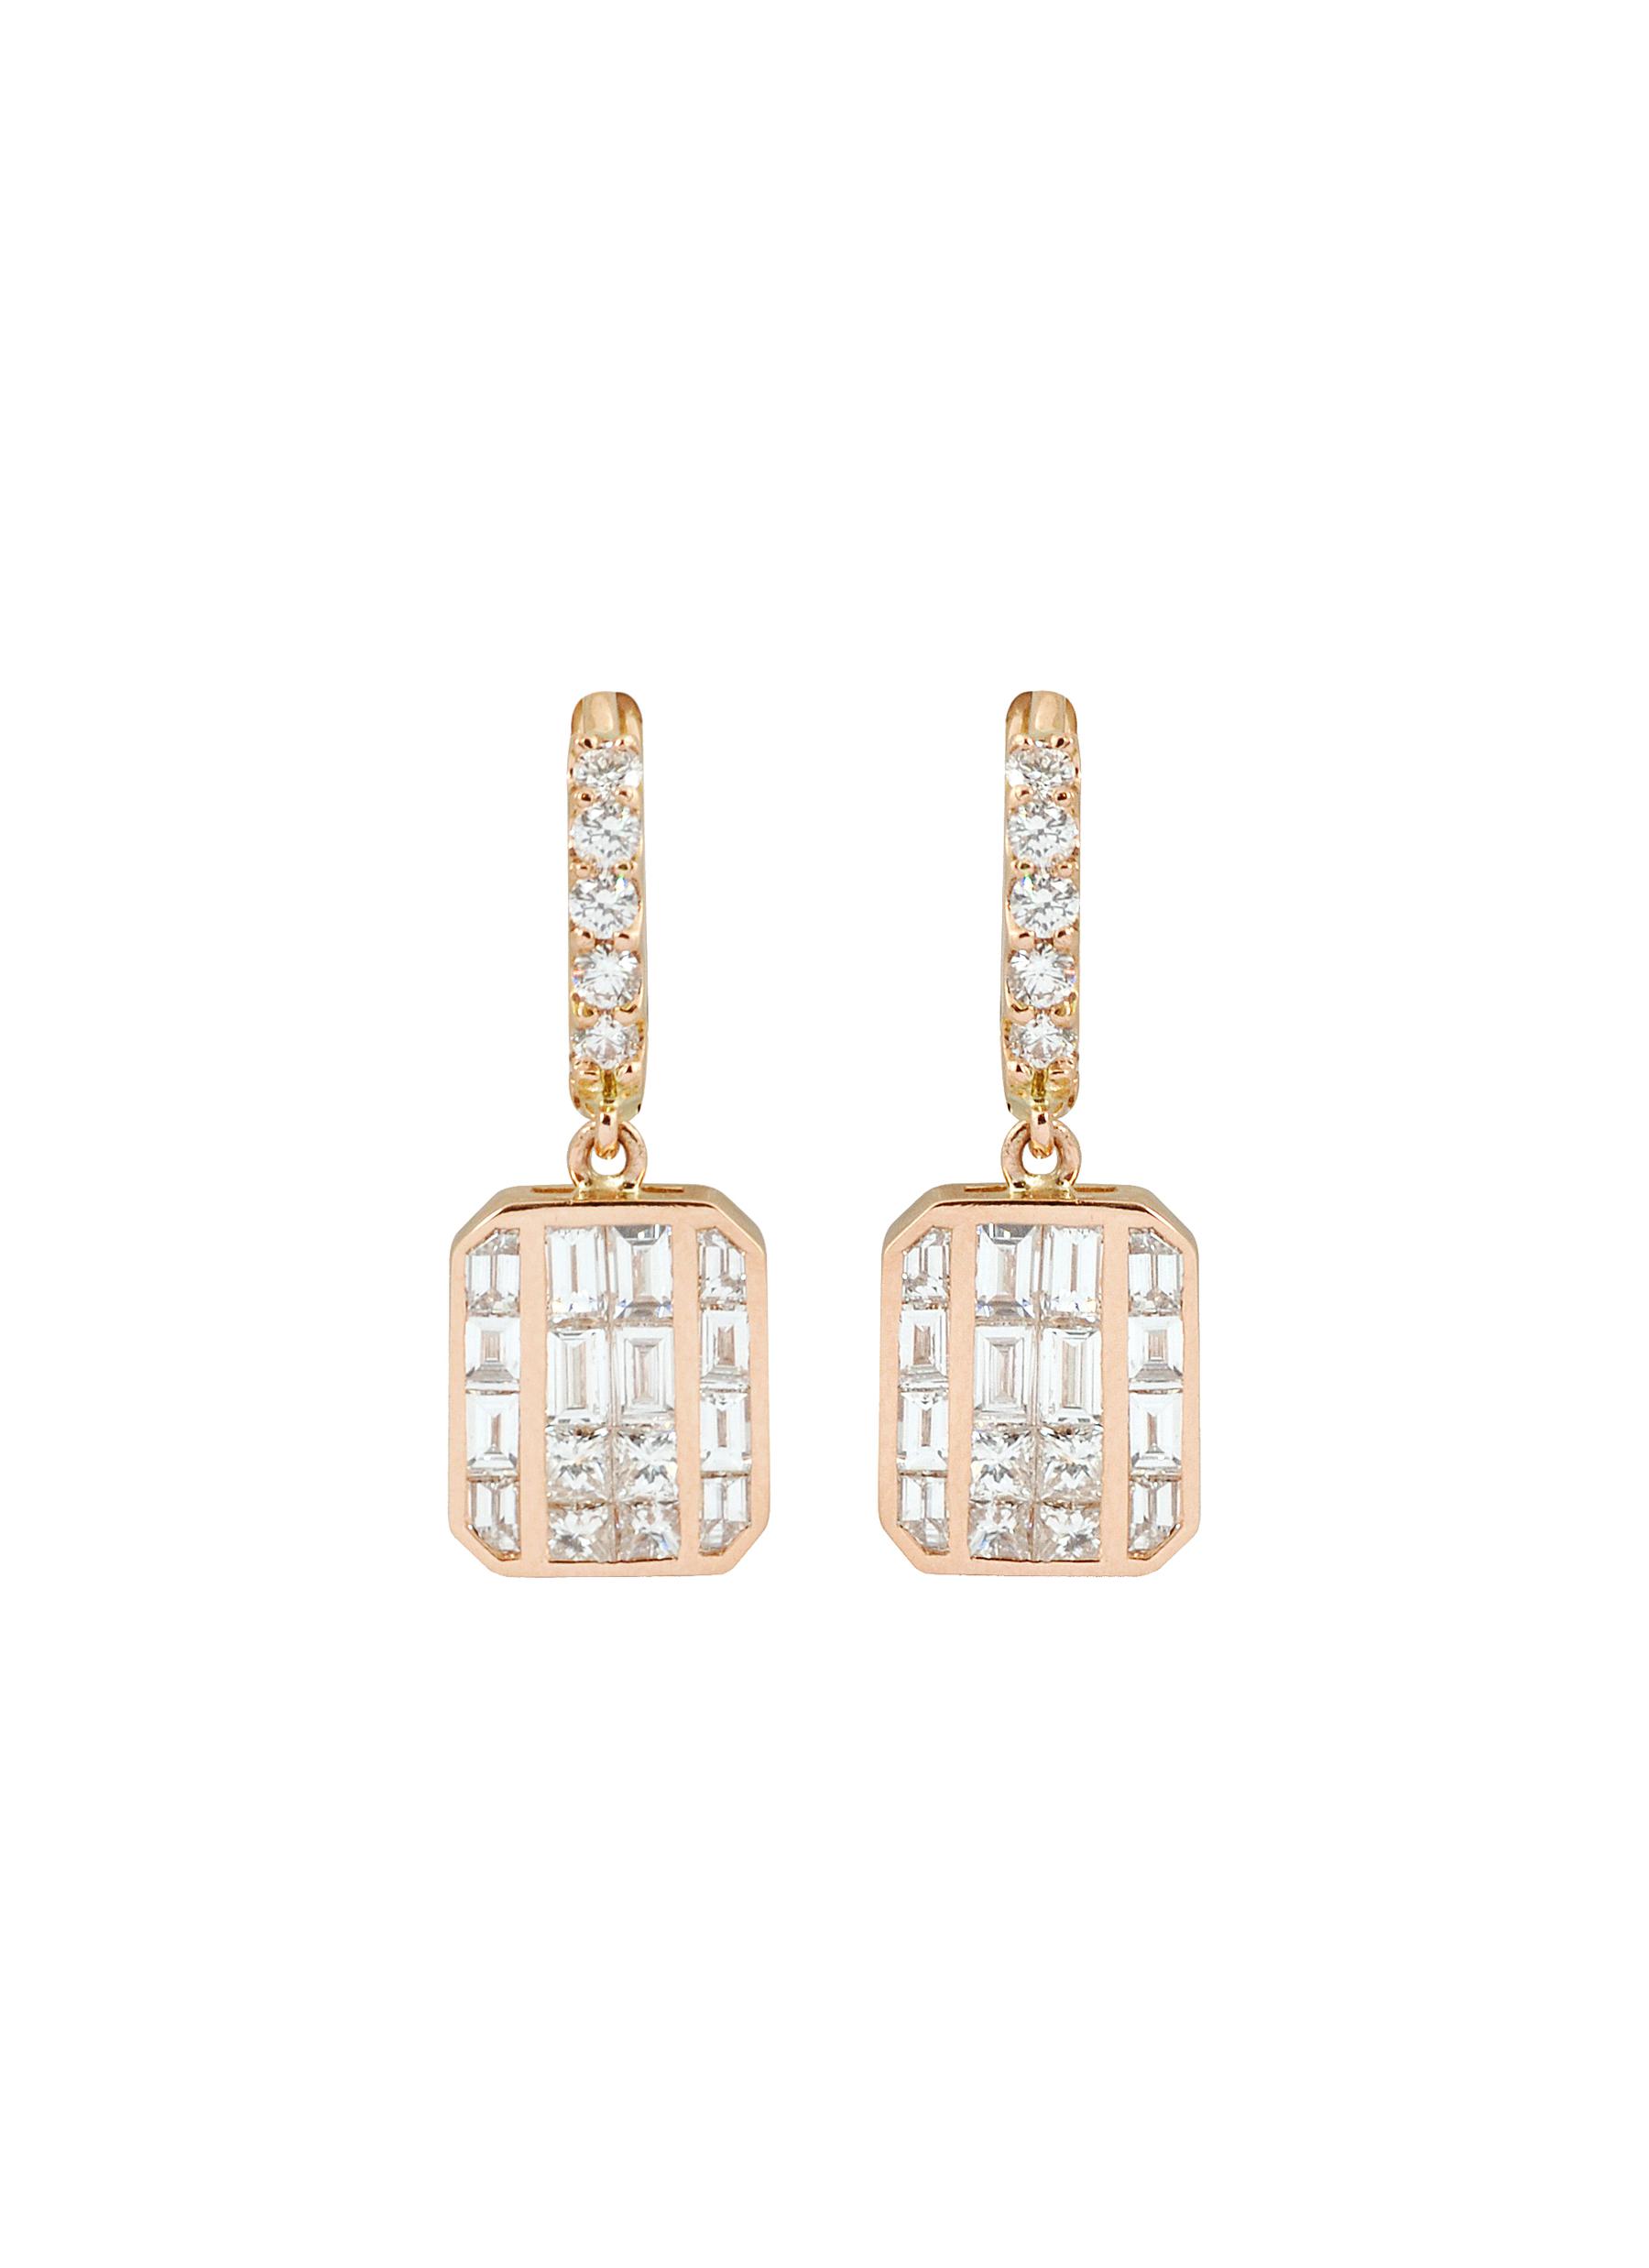 KAVANT & SHARART ‘GeoArt' Diamond 18K Rose Gold Drop Earrings